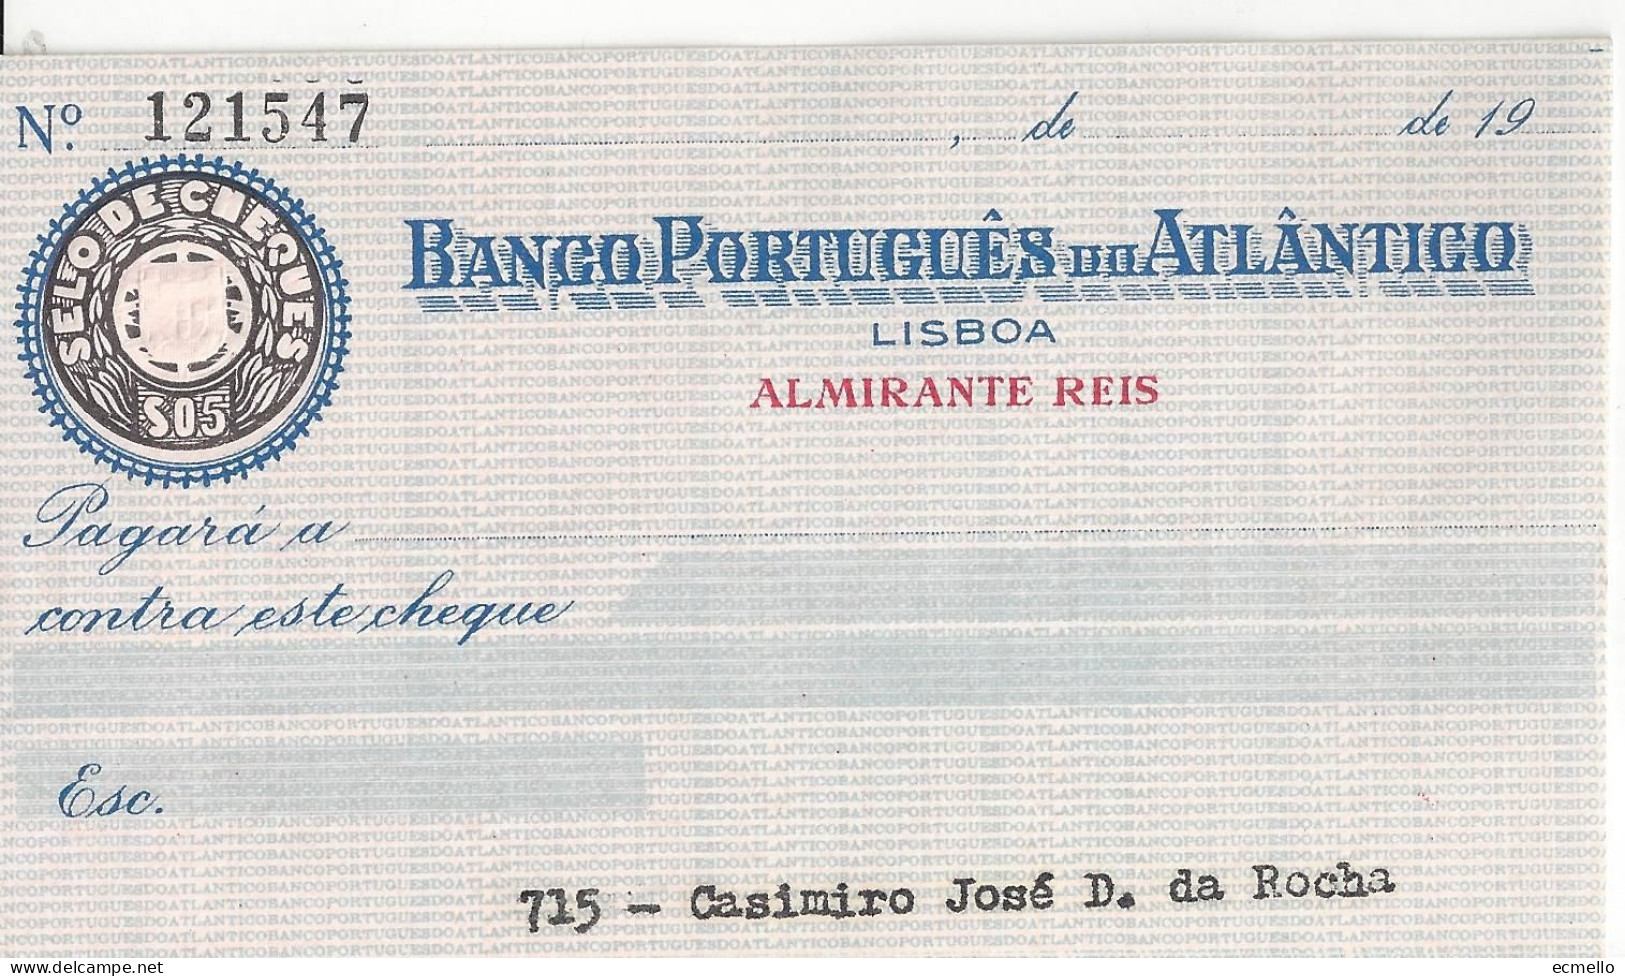 PORTUGAL CHEQUE CHECK BANCO PORTUGUÊS DO ATLÂNTICO, 1950'S, AZUL - Cheques En Traveller's Cheques